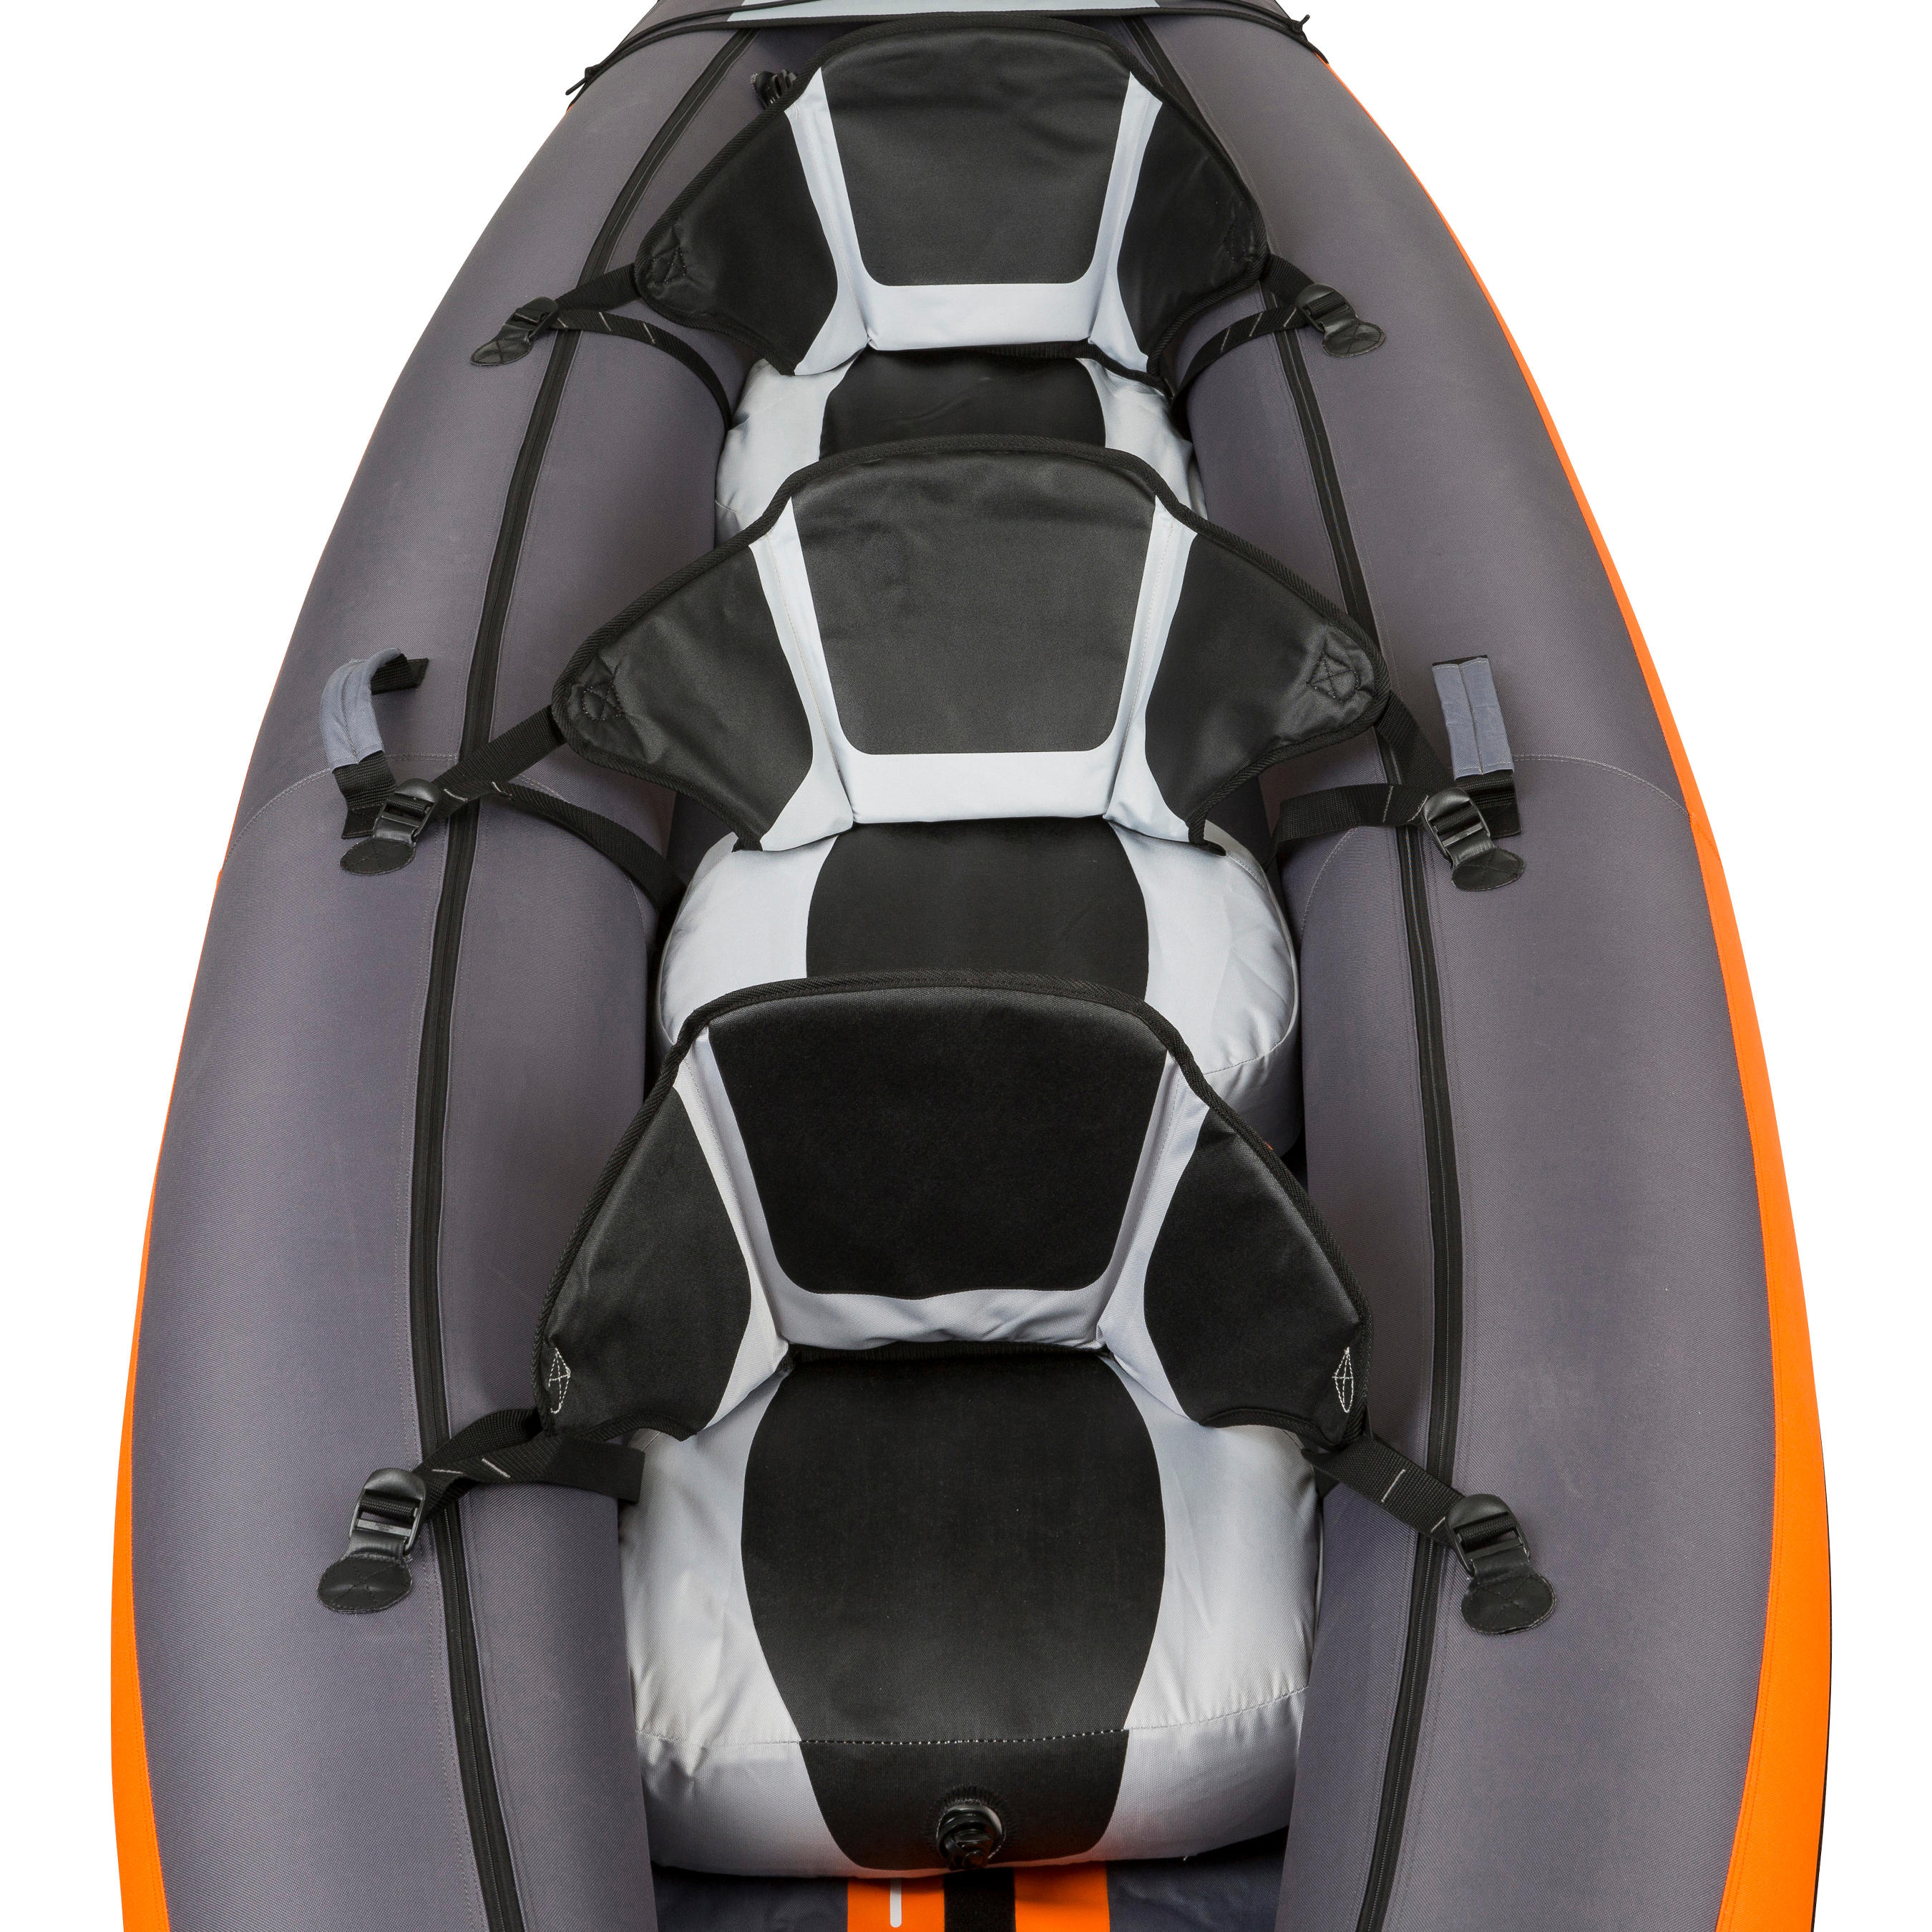 3-Seater Inflatable Kayak - KTI 100 Orange - ITIWIT